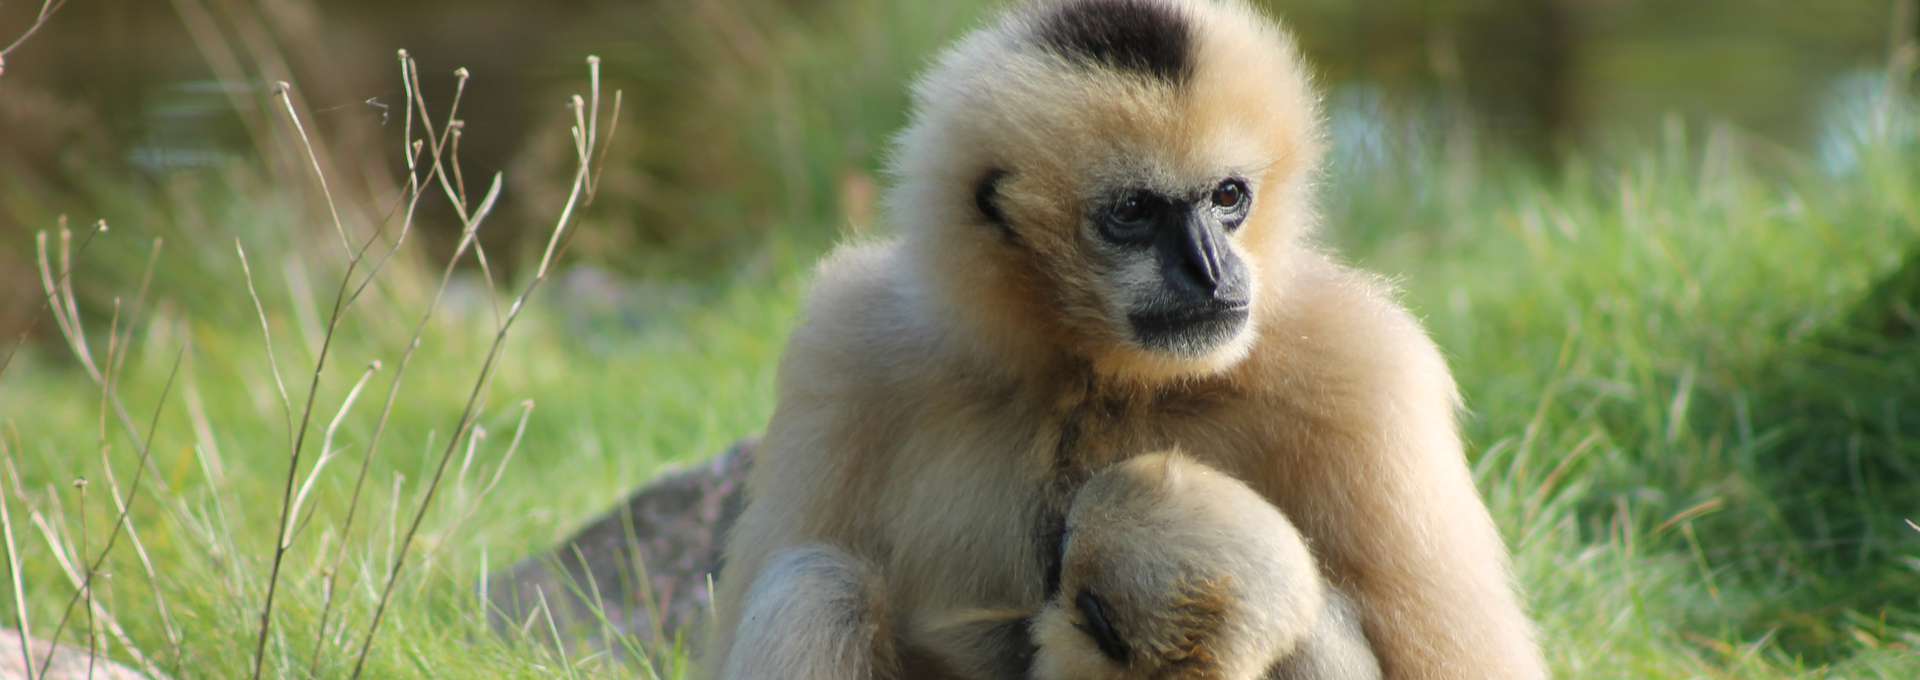 En vitkindad Gibbon som har en diande unge i famnen.